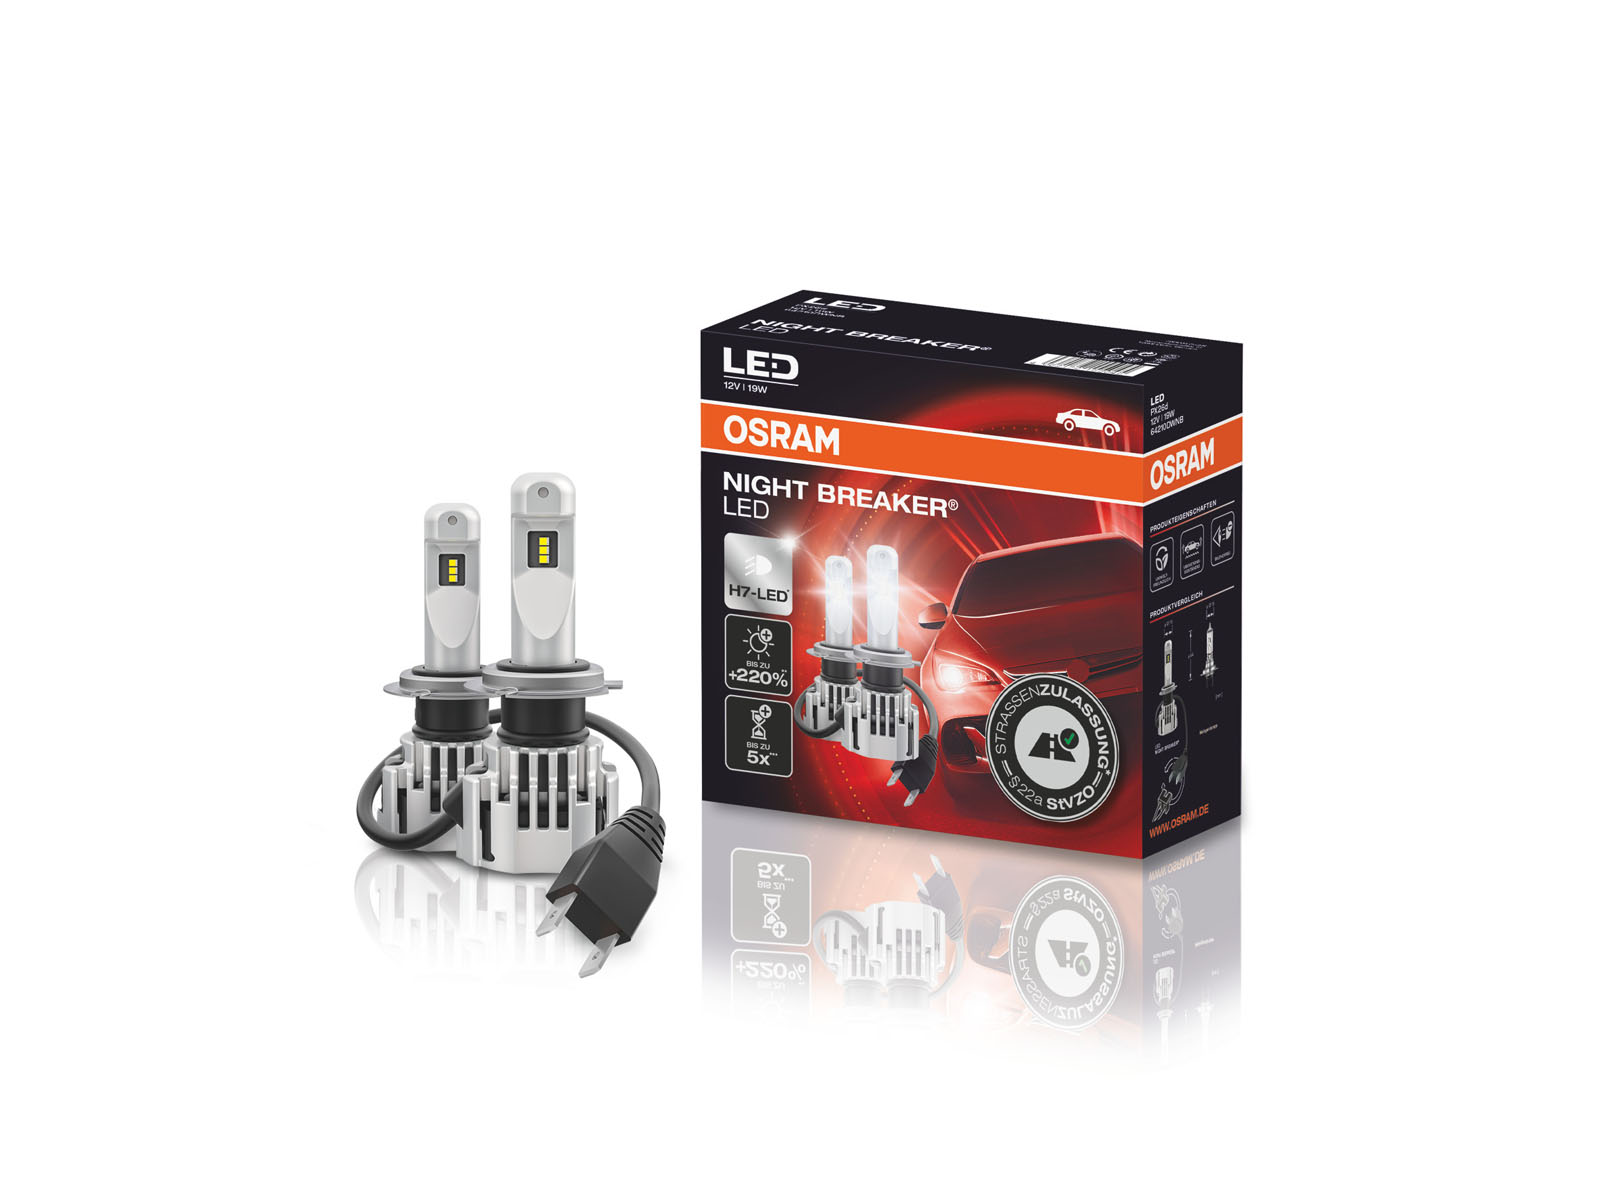 Auto-Lampen-Discount - H7 Lampen und mehr günstig kaufen - 2er Set